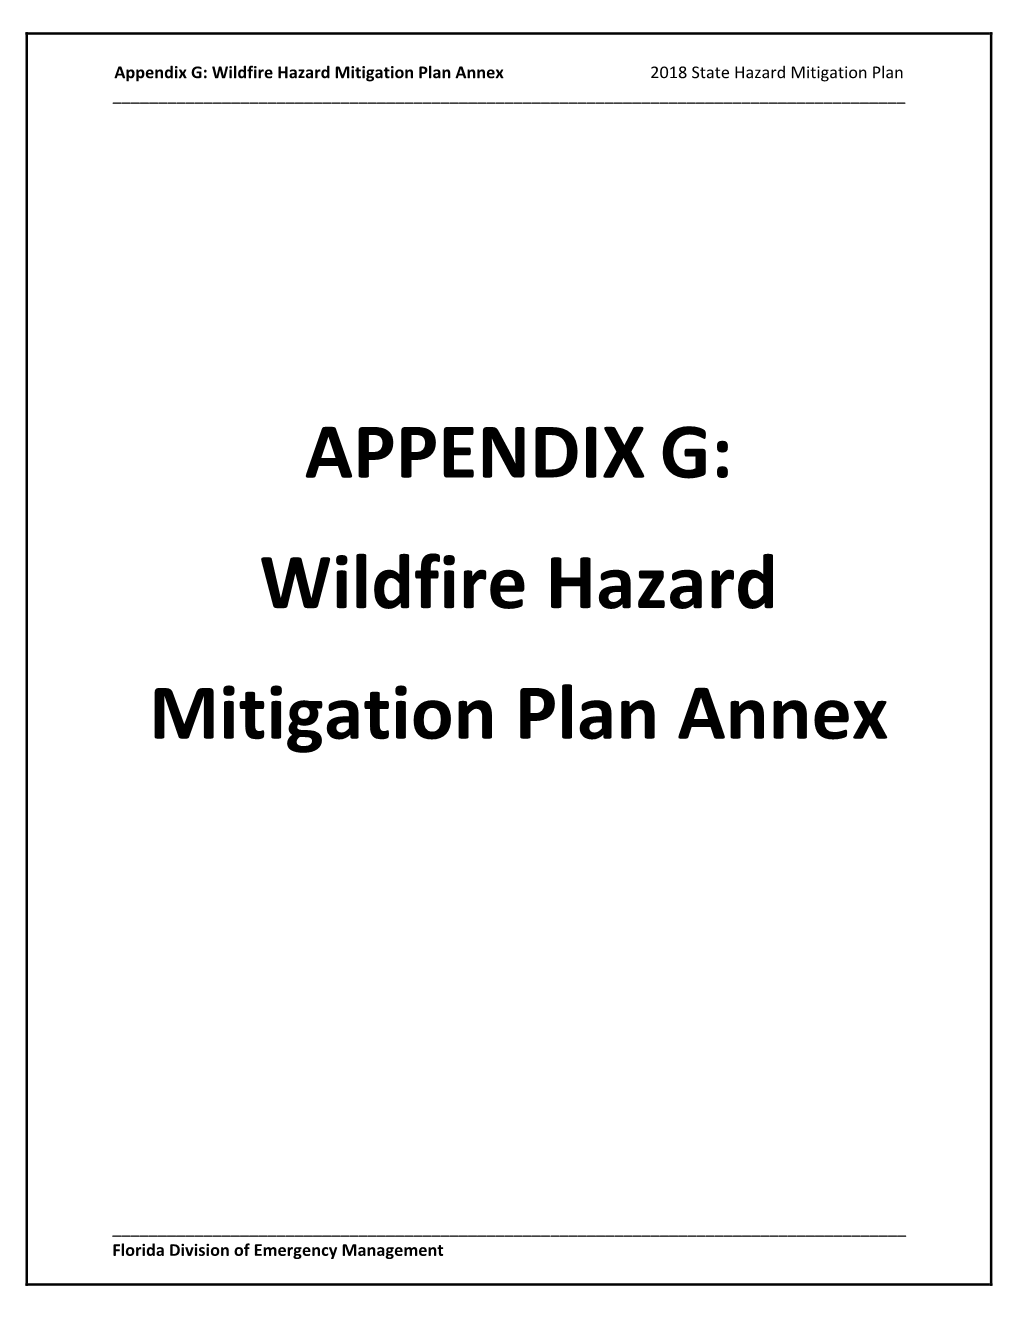 Wildfire Hazard Mitigation Plan Annex 2018 State Hazard Mitigation Plan ______